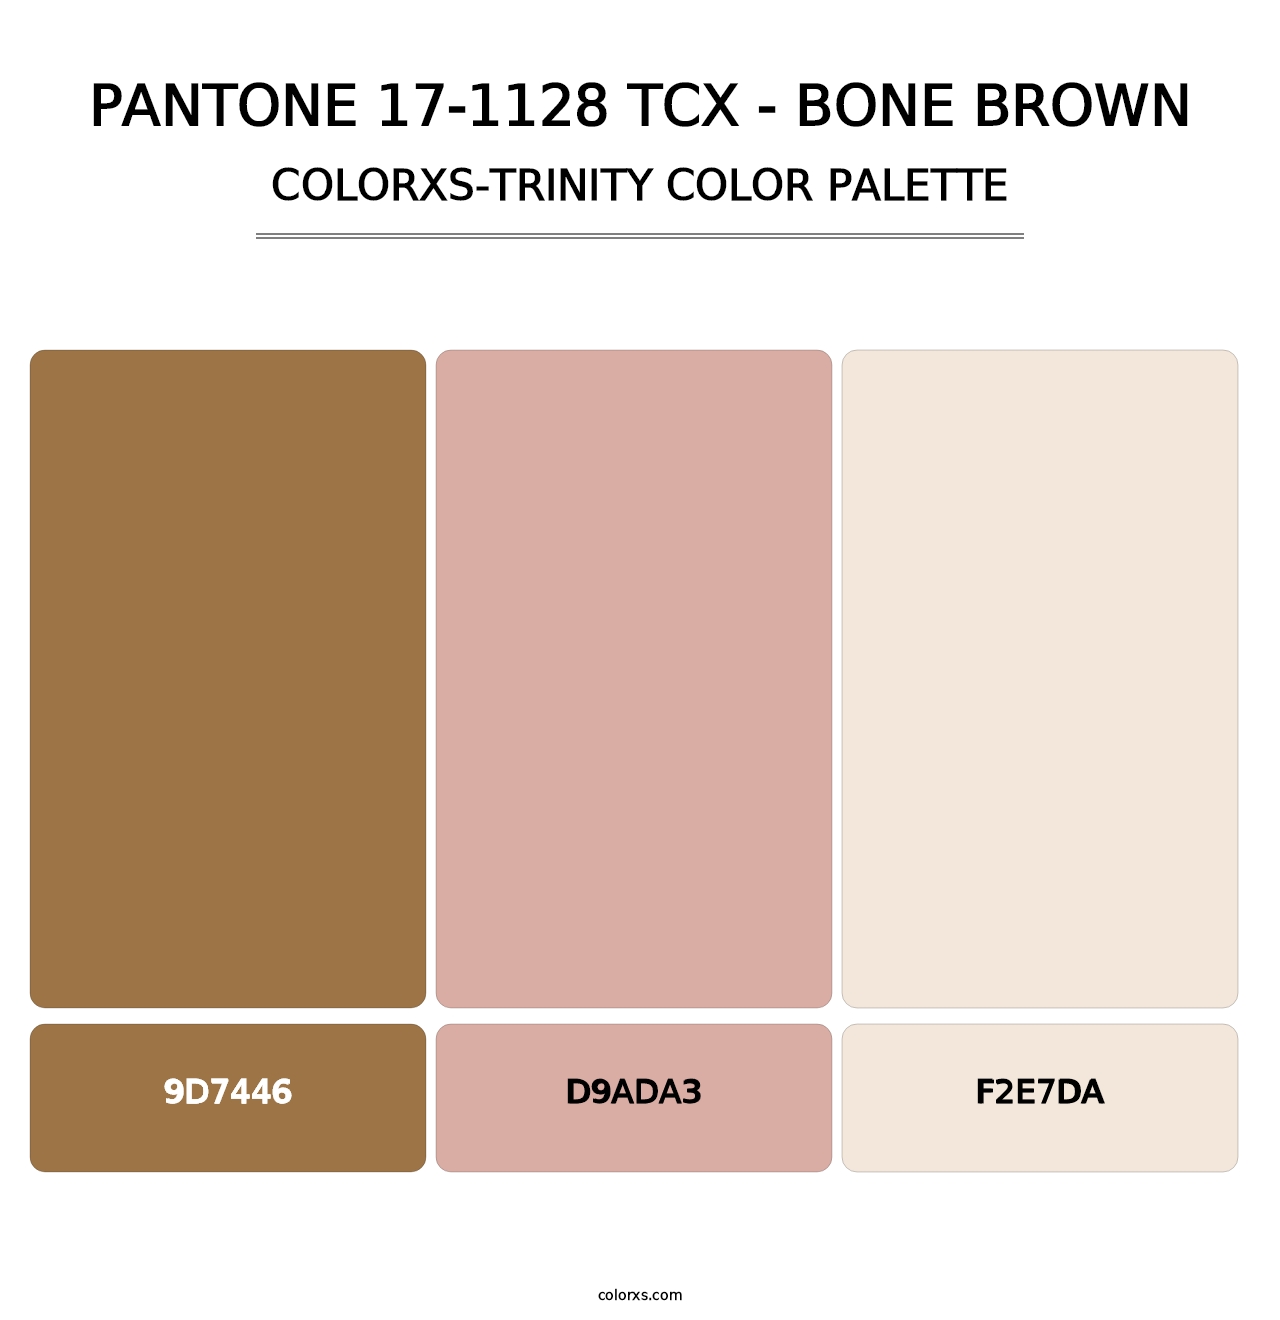 PANTONE 17-1128 TCX - Bone Brown - Colorxs Trinity Palette